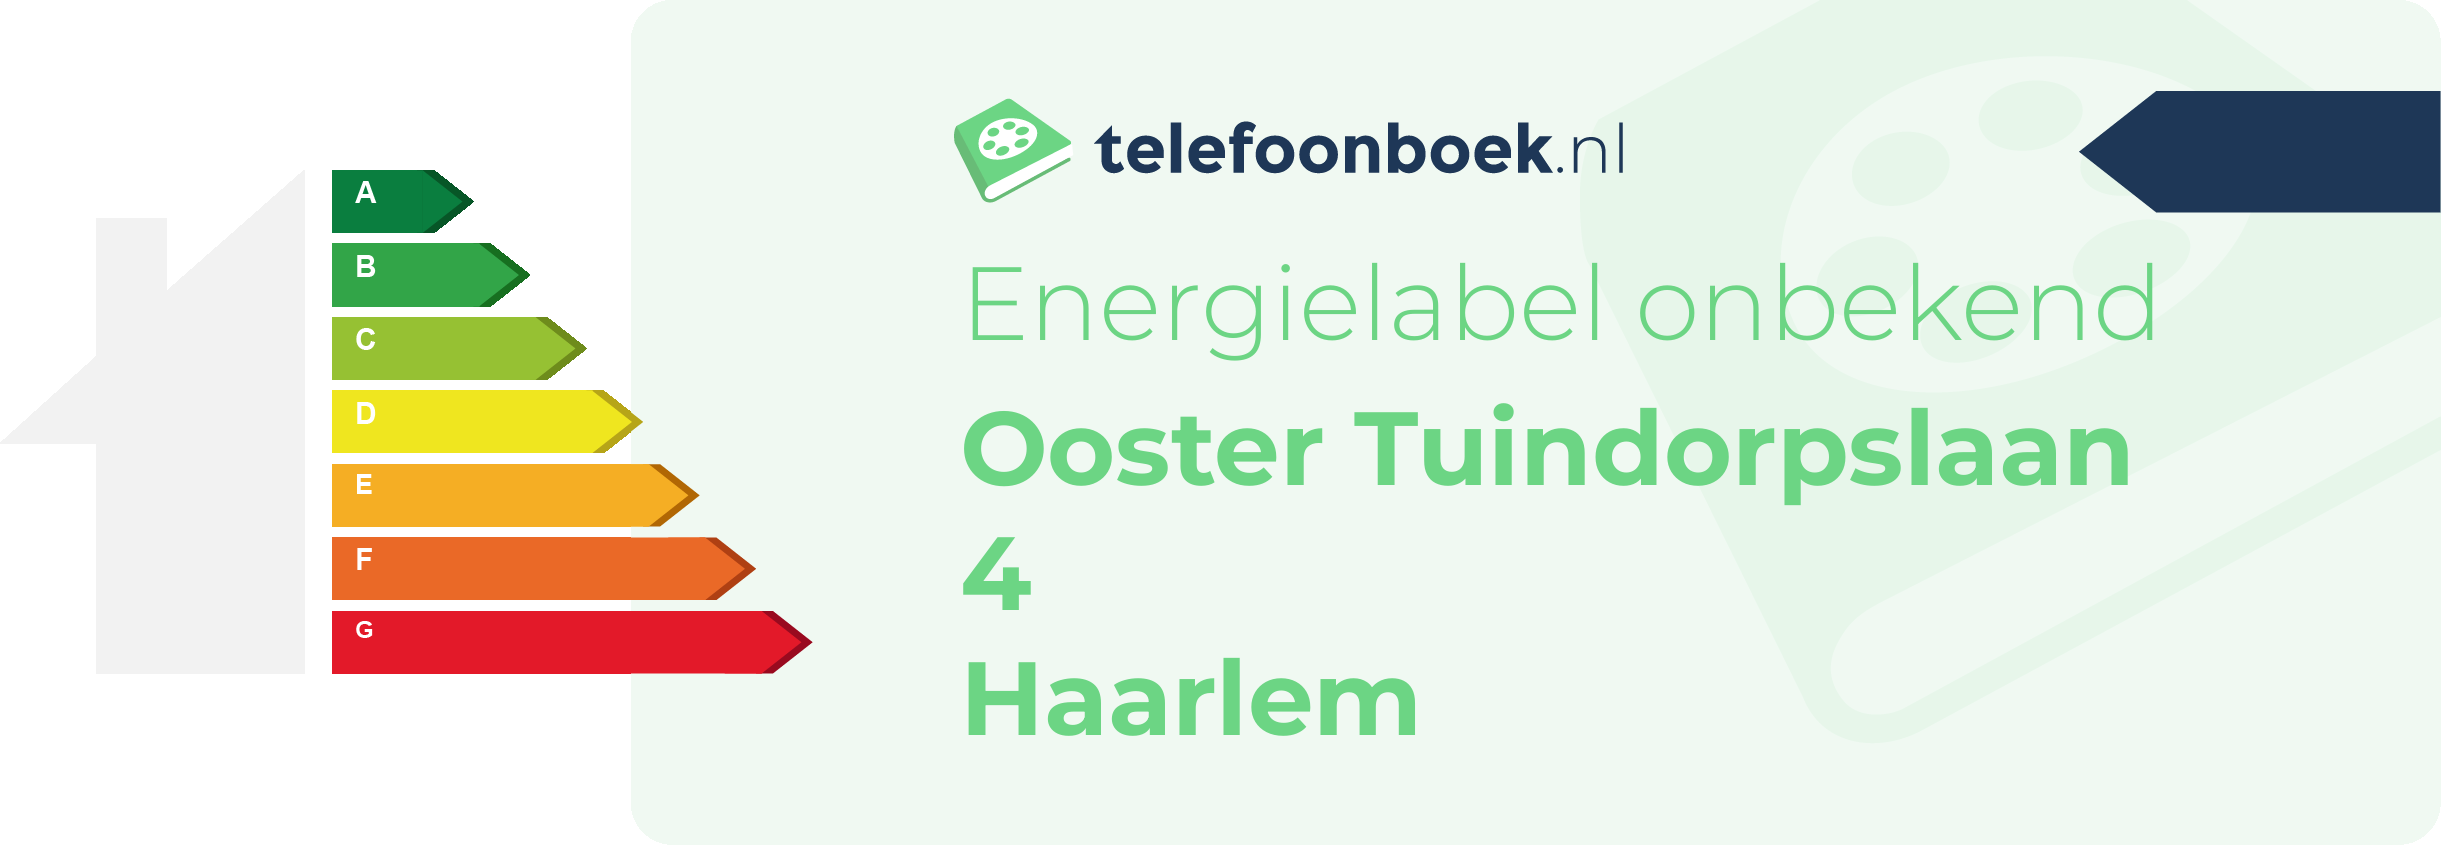 Energielabel Ooster Tuindorpslaan 4 Haarlem